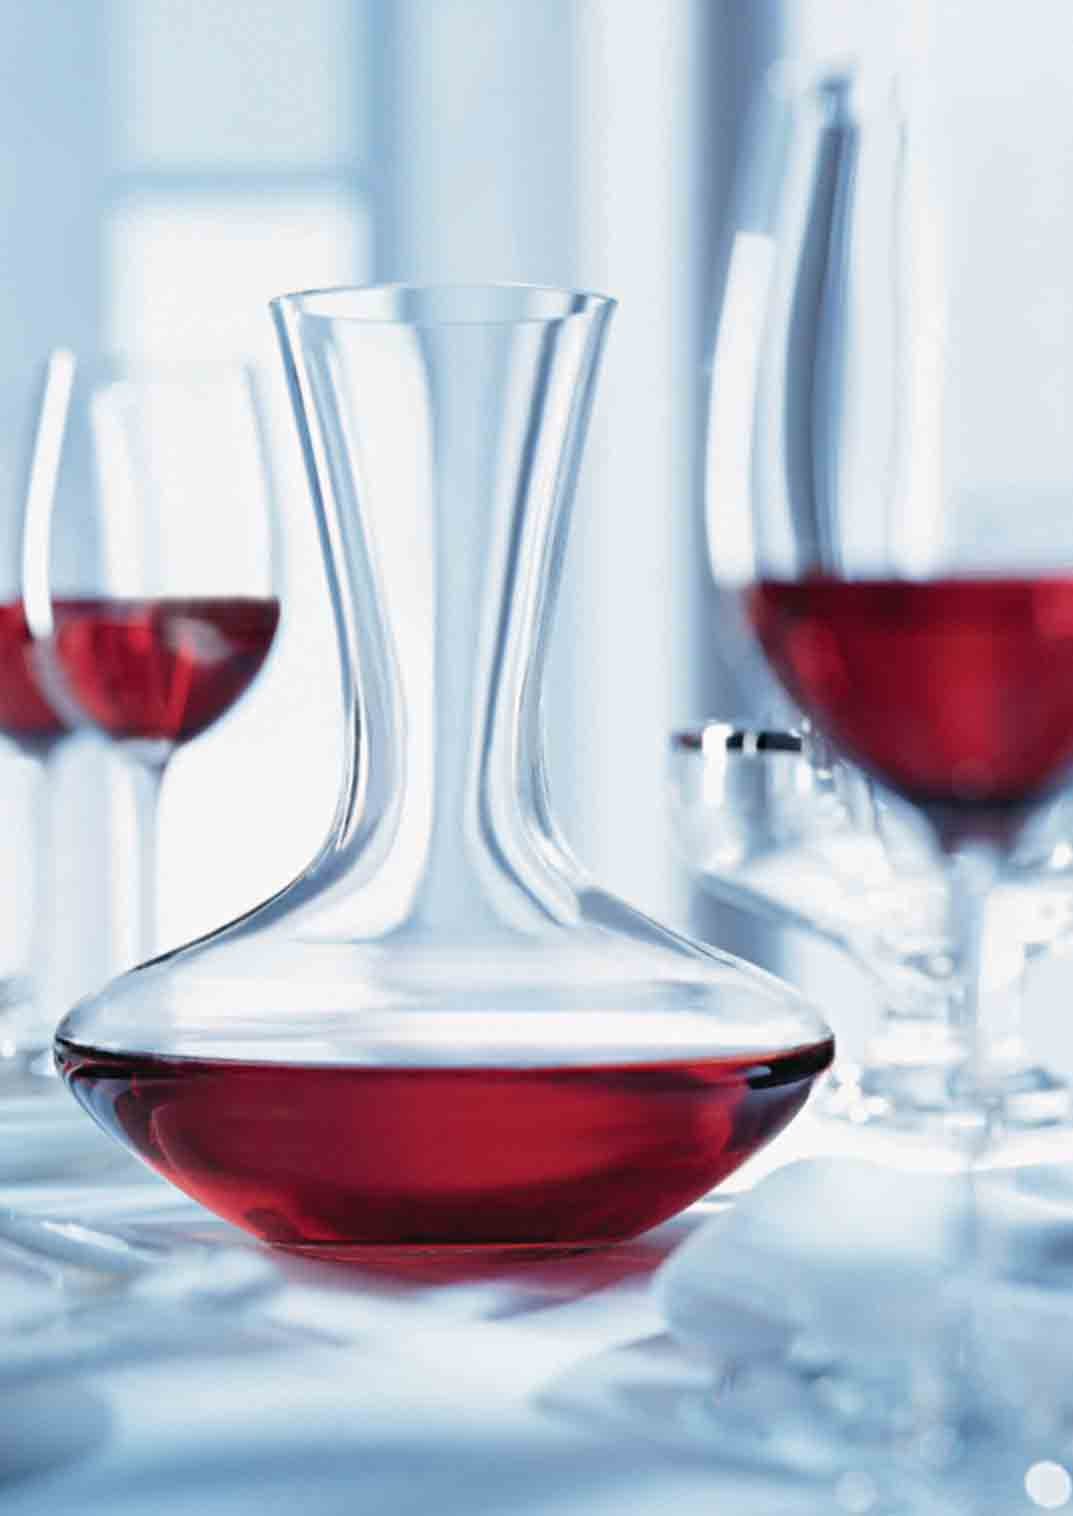 Zakres urządzeń dla miłośników wina Linia Vinidor Strona 6 Linia Vinidor oferuje wyjątkową elastyczność - łączy w sobie zalety urządzeń do długotrwałego przechowywania win z zaletami winiarek ze